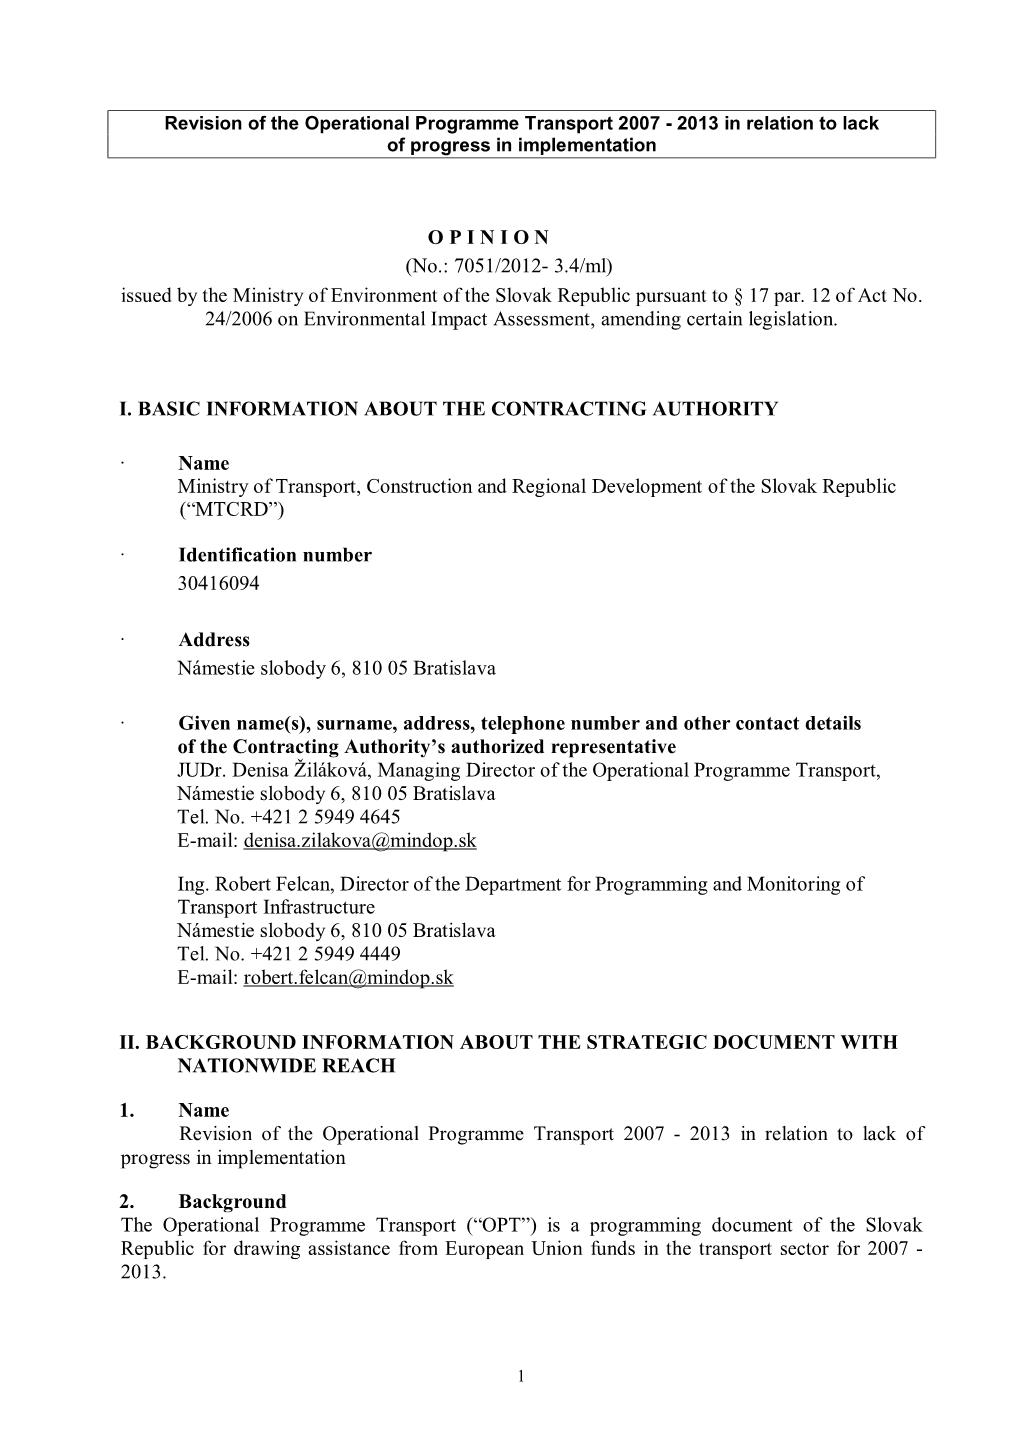 O P I N I O N (No.: 7051/2012- 3.4/Ml) Issued by the Ministry of Environment of the Slovak Republic Pursuant to § 17 Par